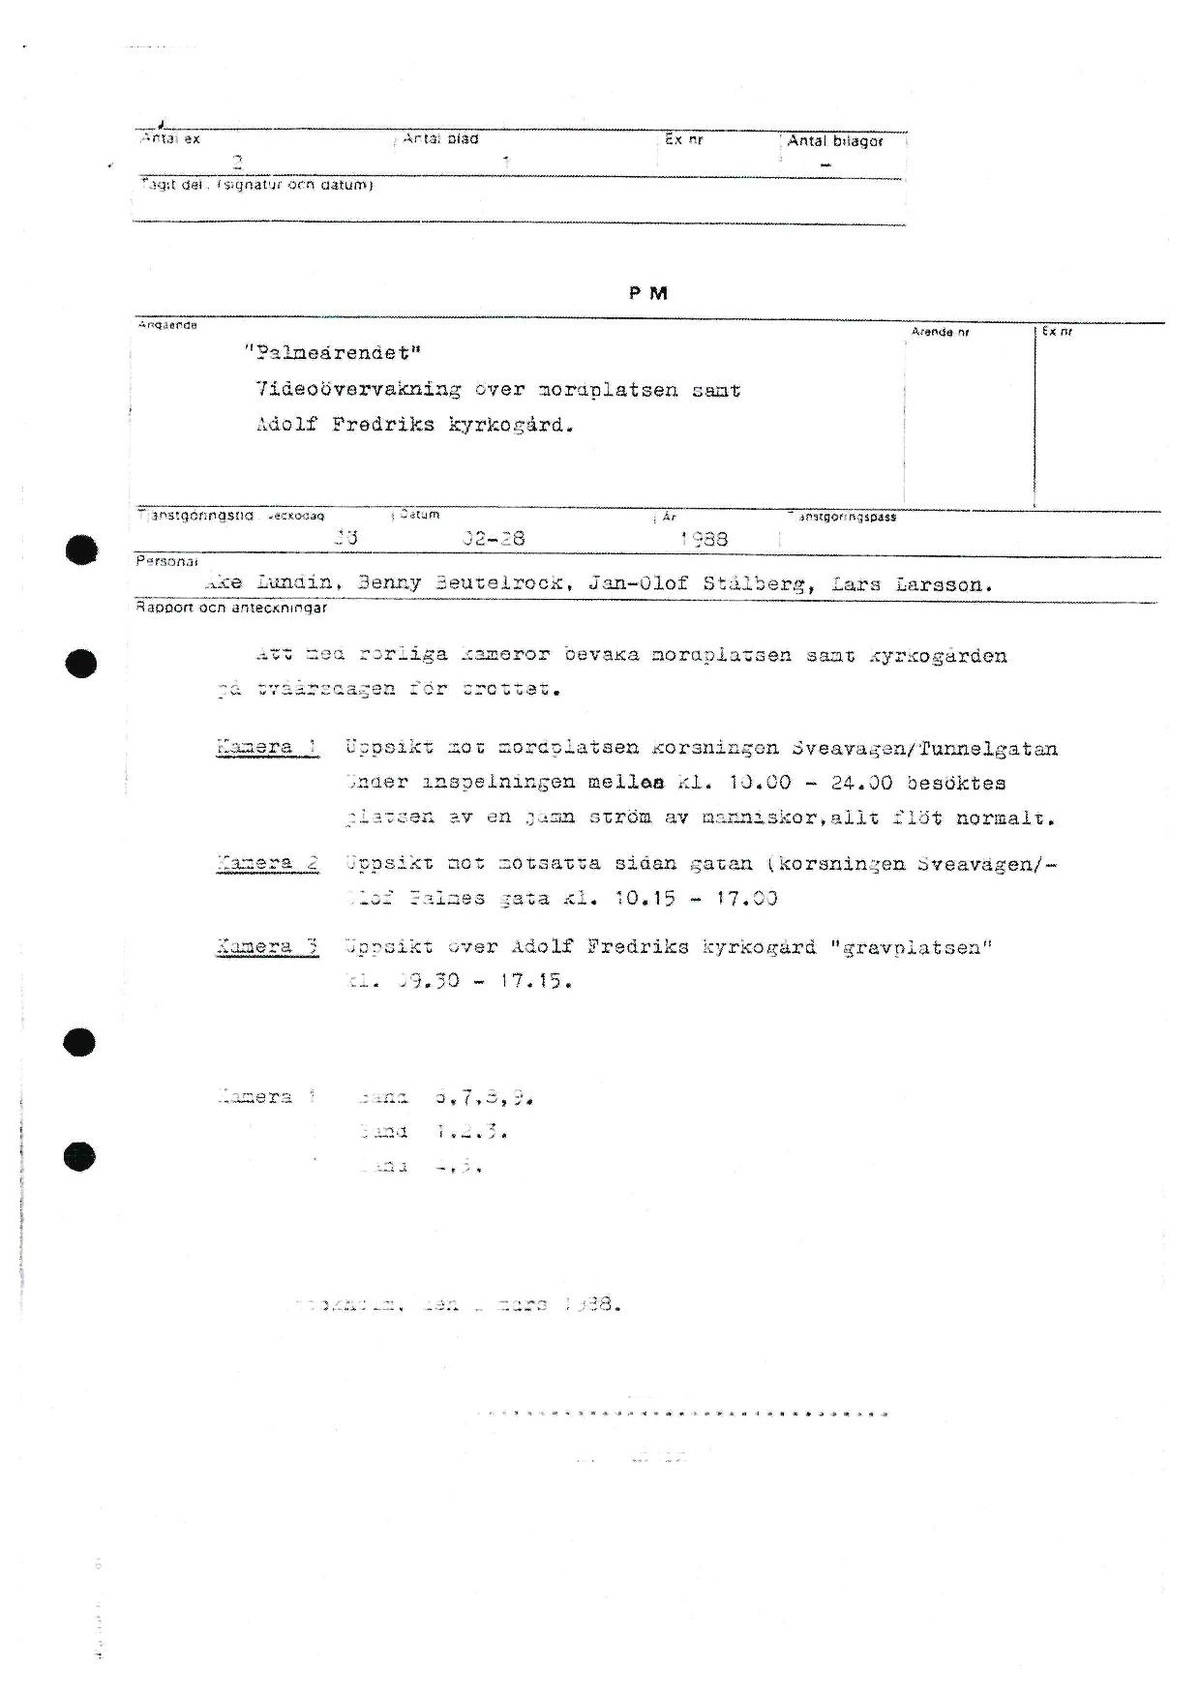 Pol-1988-04-19 1320 A9585-00 Videoövervakning runt mordplatsen.pdf